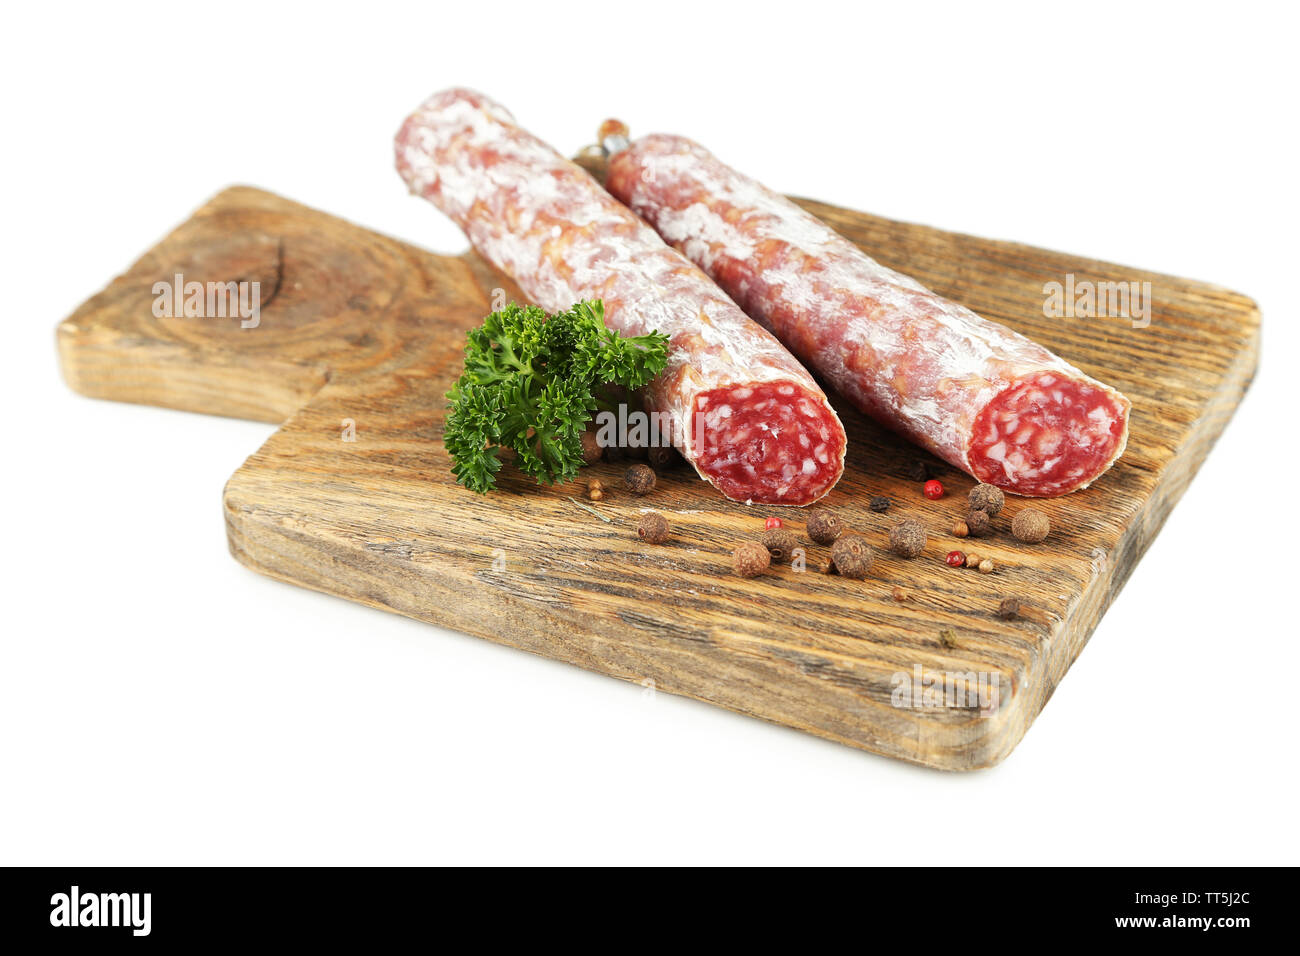 Venison sausage (salami) Cut Out Stock Images & Pictures - Alamy